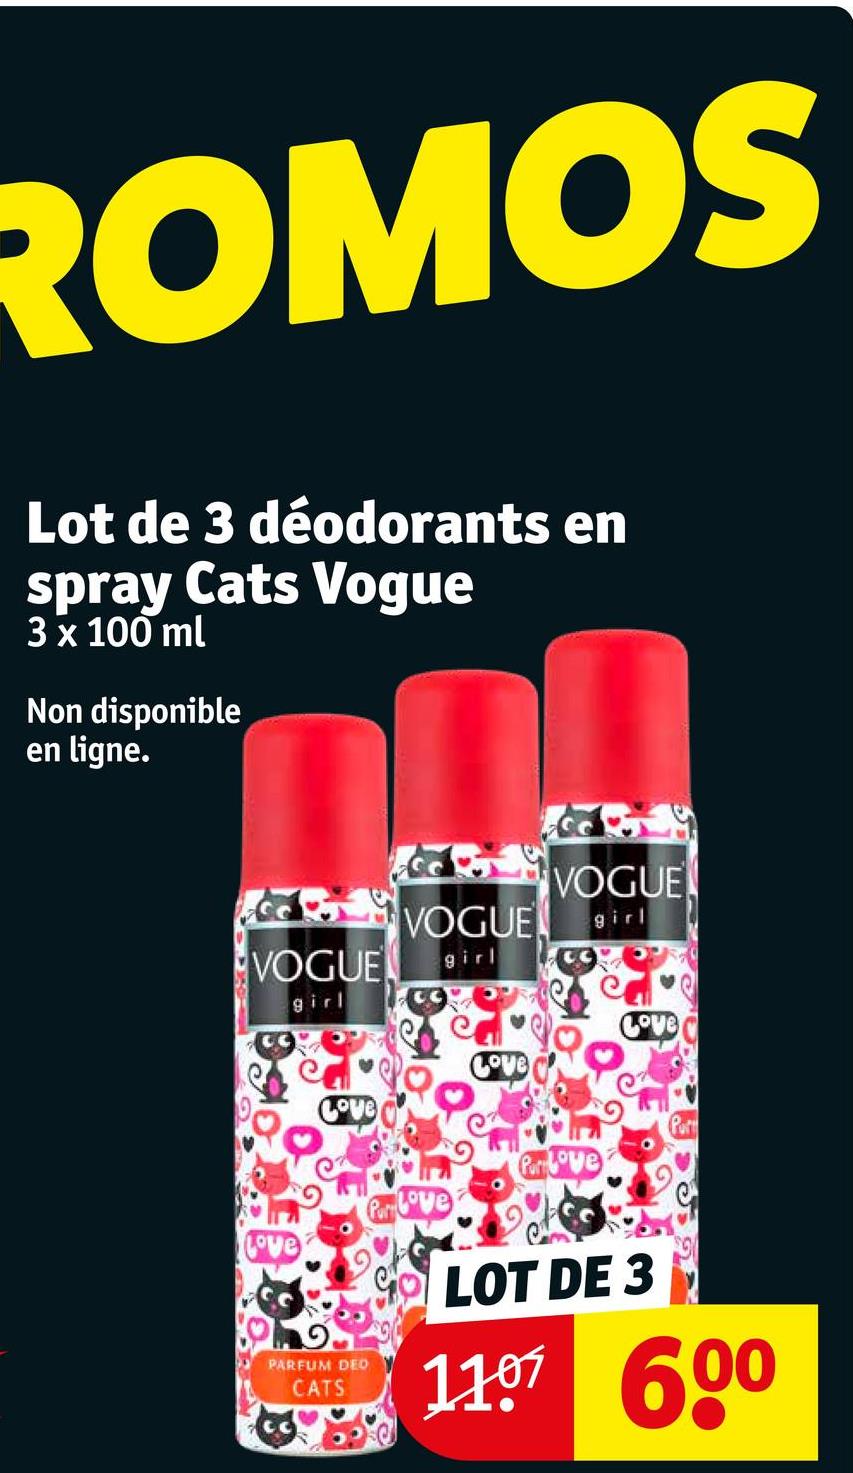 ROMOS
Lot de 3 déodorants en
spray Cats Vogue
3 x 100 ml
Non disponible
en ligne.
VOGUE
VOGUE
girl
VOGUE girl
girl
Prove
Prove
Love
Love
PARFUM DEO
CATS
LOT DE 3
1107 600